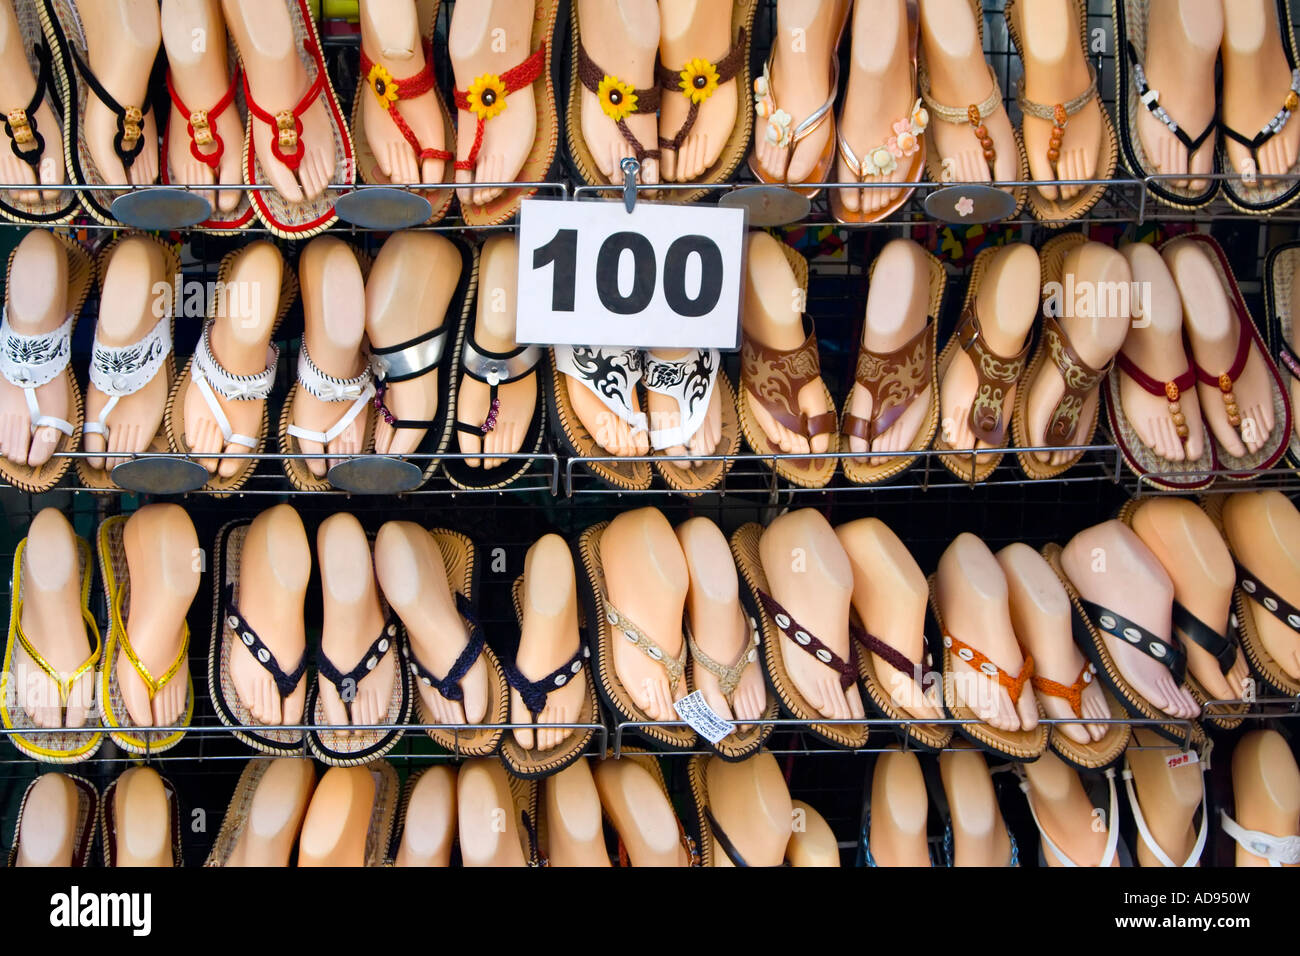 Sandals at market stall, Khao San Road, Bangkok, Thailand Stock Photo